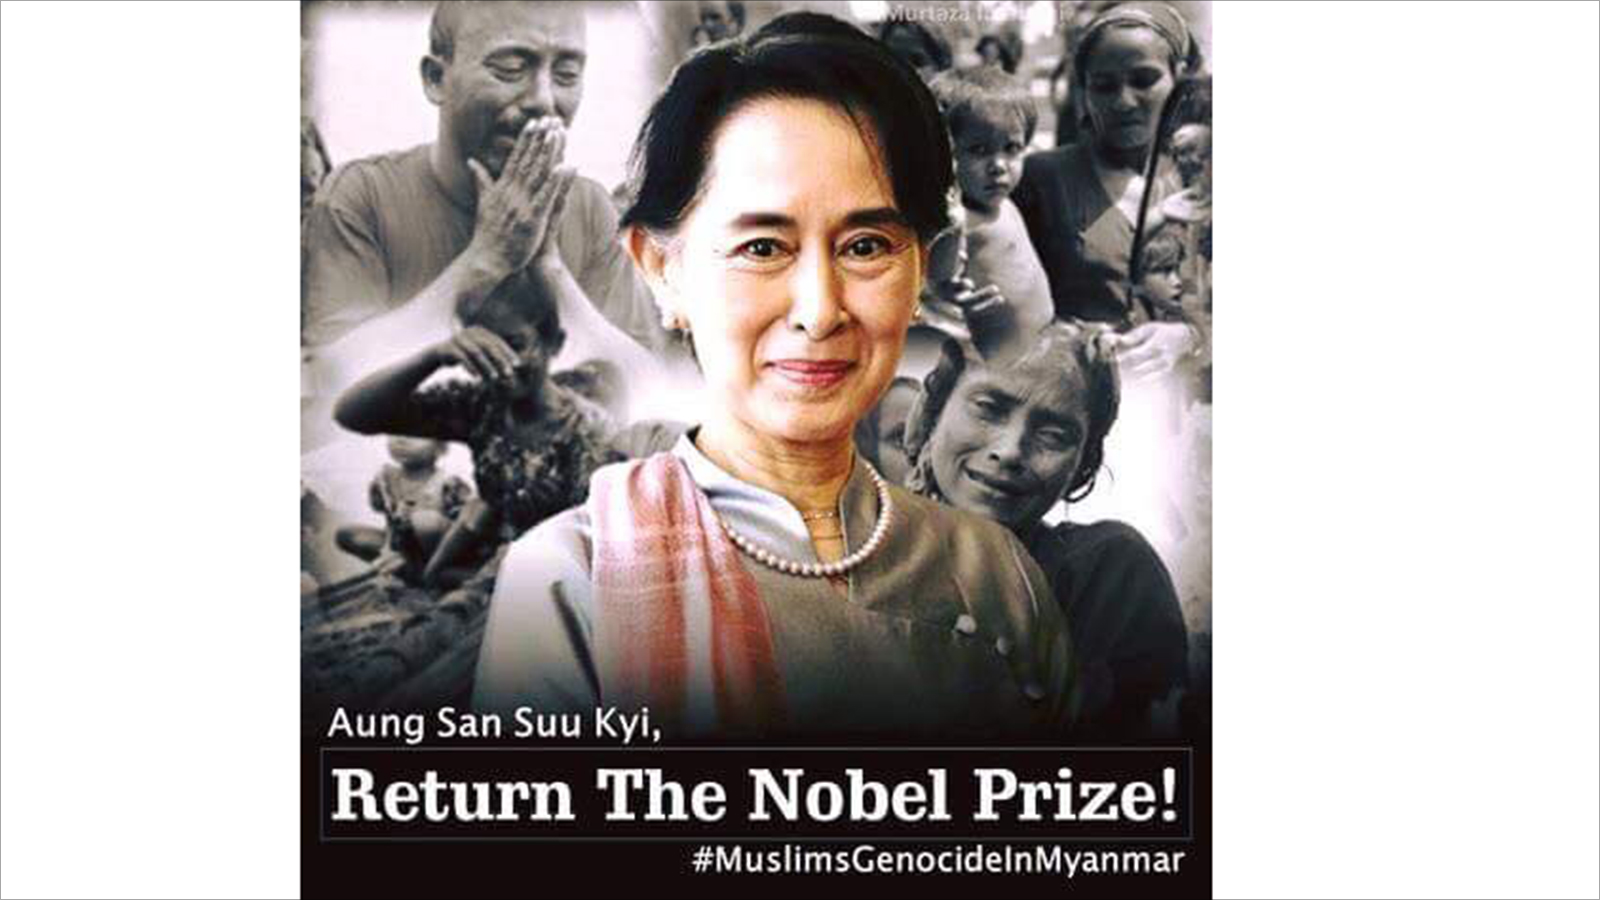 ‪إحدى الحملات التي أطلقها ناشطون على مواقع التواصل للمطالبة بسحب جائزة نوبل من الزعيمة الميانمارية‬ إحدى الحملات التي أطلقها ناشطون على مواقع التواصل للمطالبة بسحب جائزة نوبل من الزعيمة الميانمارية (ناشطون)